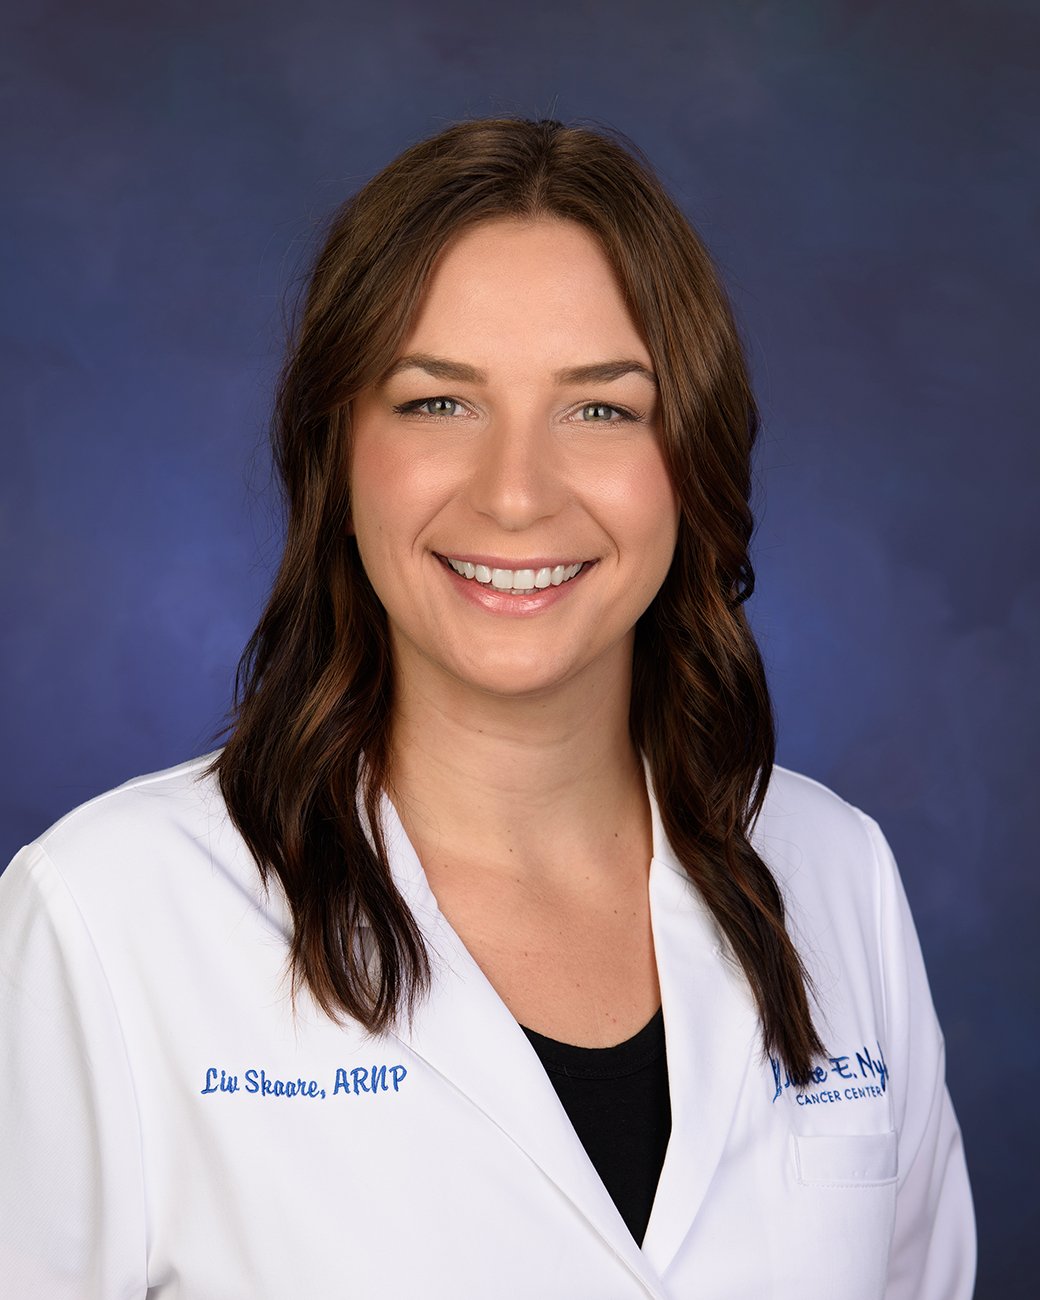 Liv Skaare, ARNP, FNP-C - Nurse Practitioner